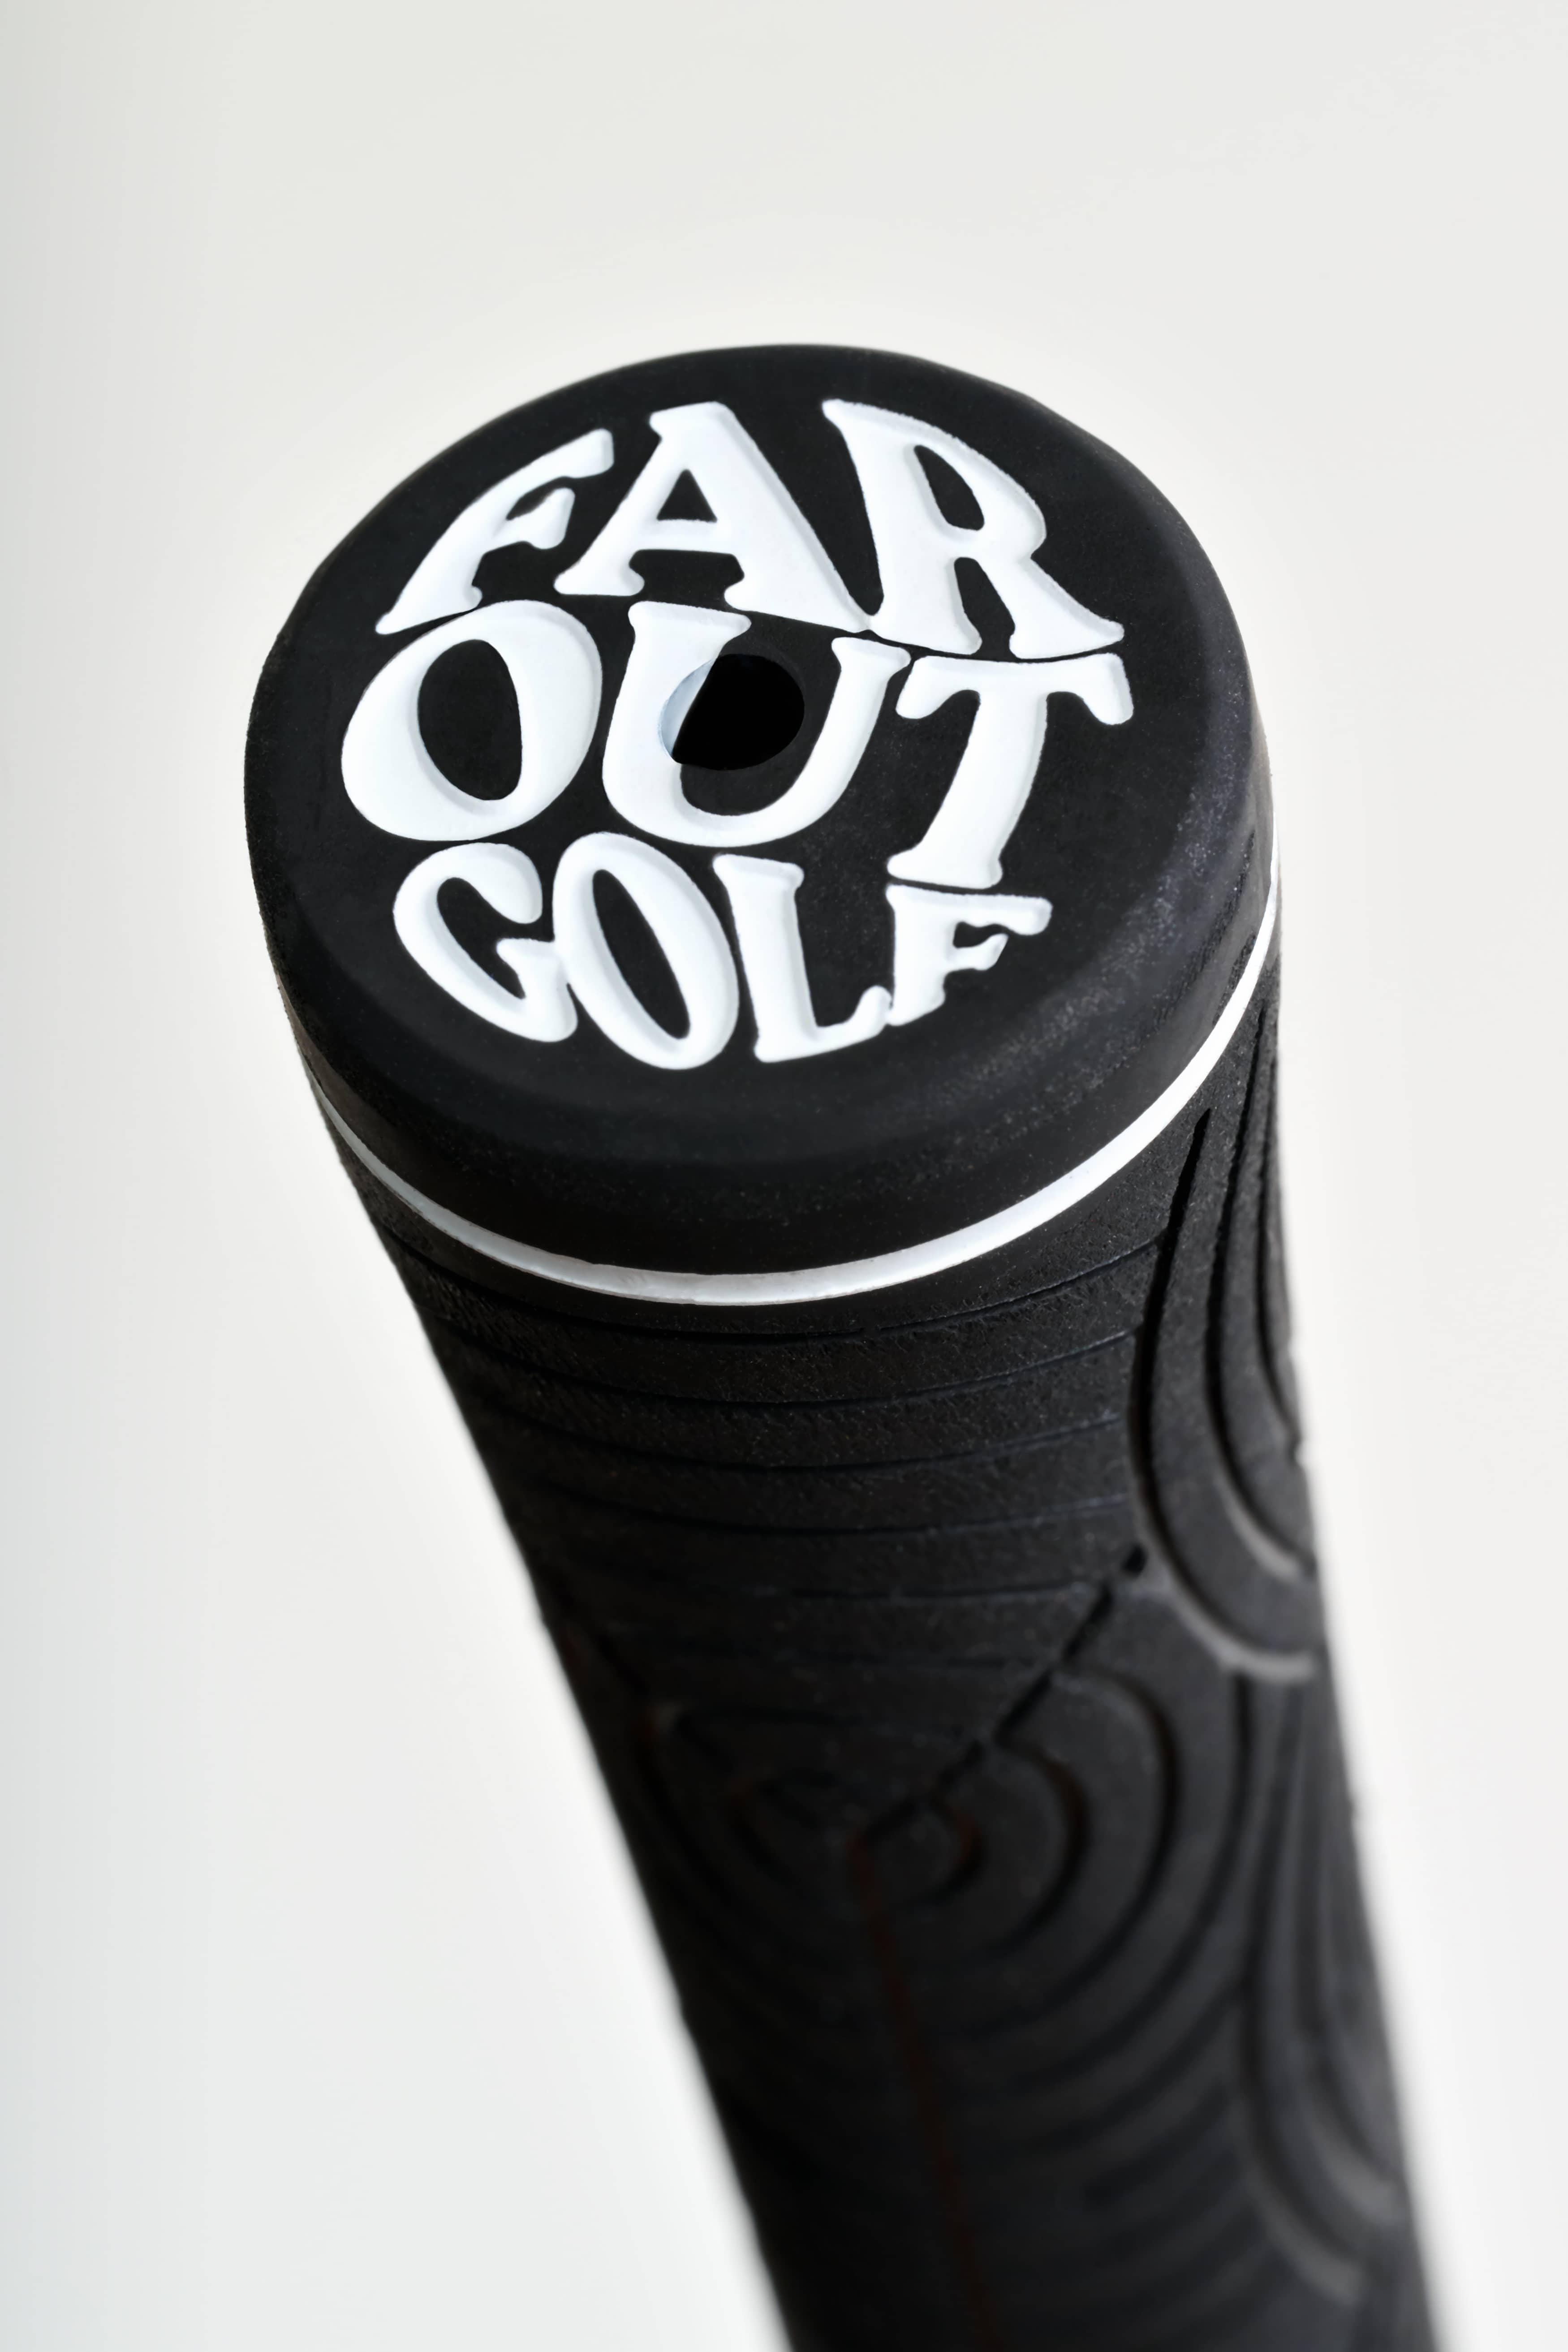 Coal golf grip - Standard